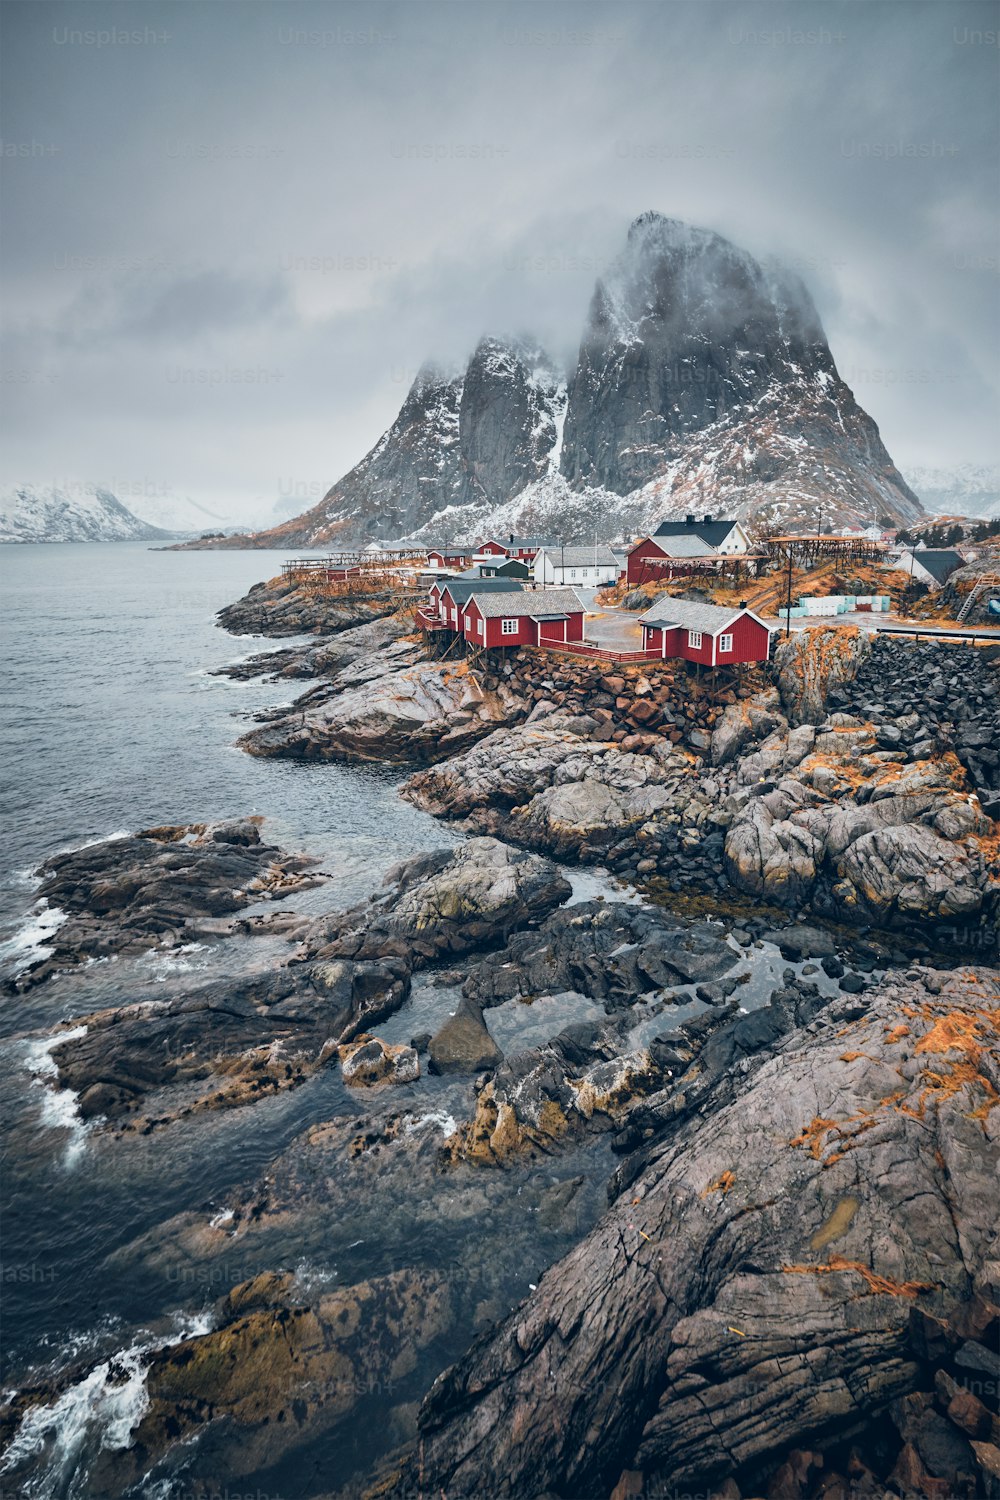 ノルウェーのロフォーテン諸島にある有名な観光名所ハムノイ漁村で、赤いロルブの家があります。冬に雪が降ると